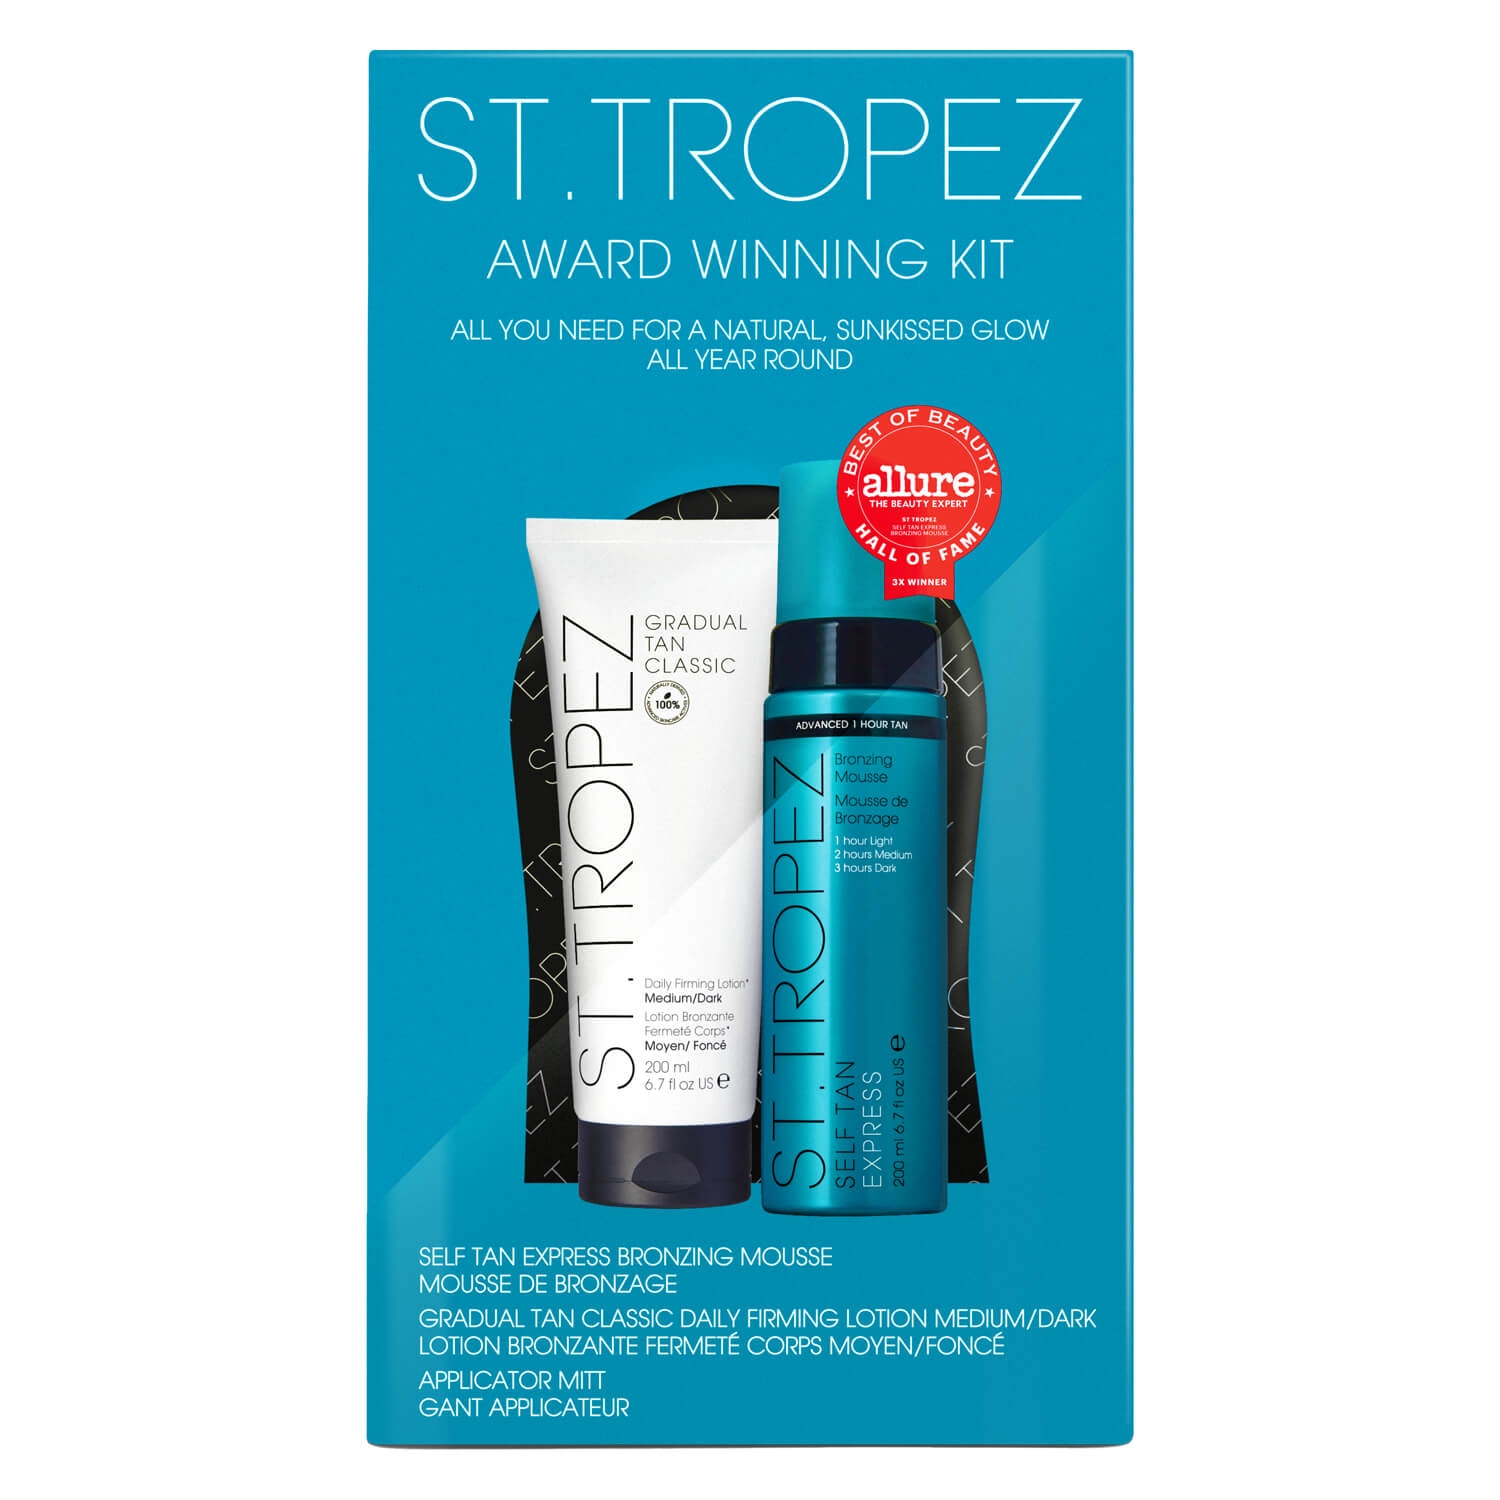 Produktbild von St.Tropez - Award Winning Kit